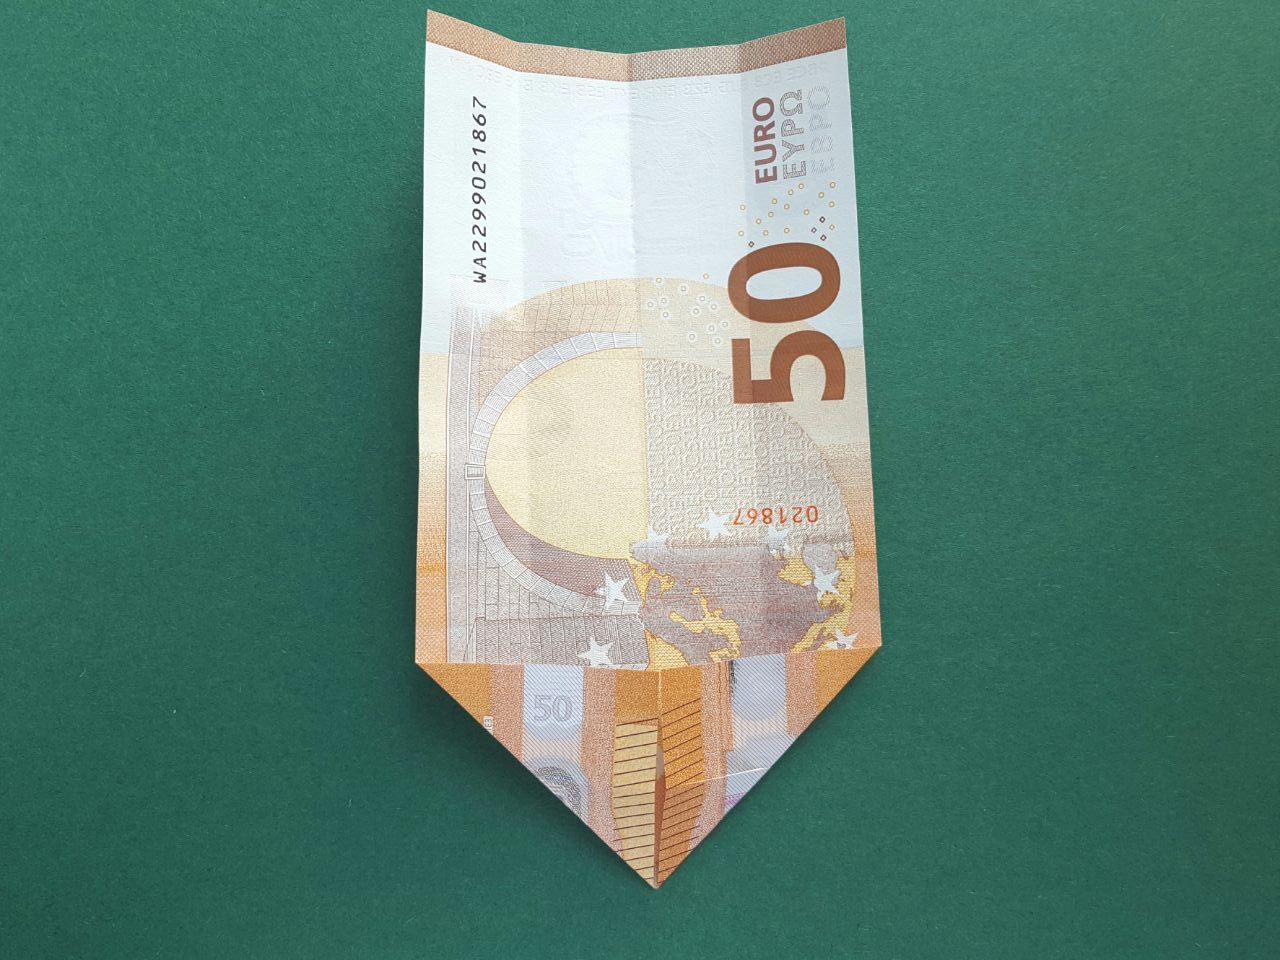 50 Euro Geldschein falten Schritt 5